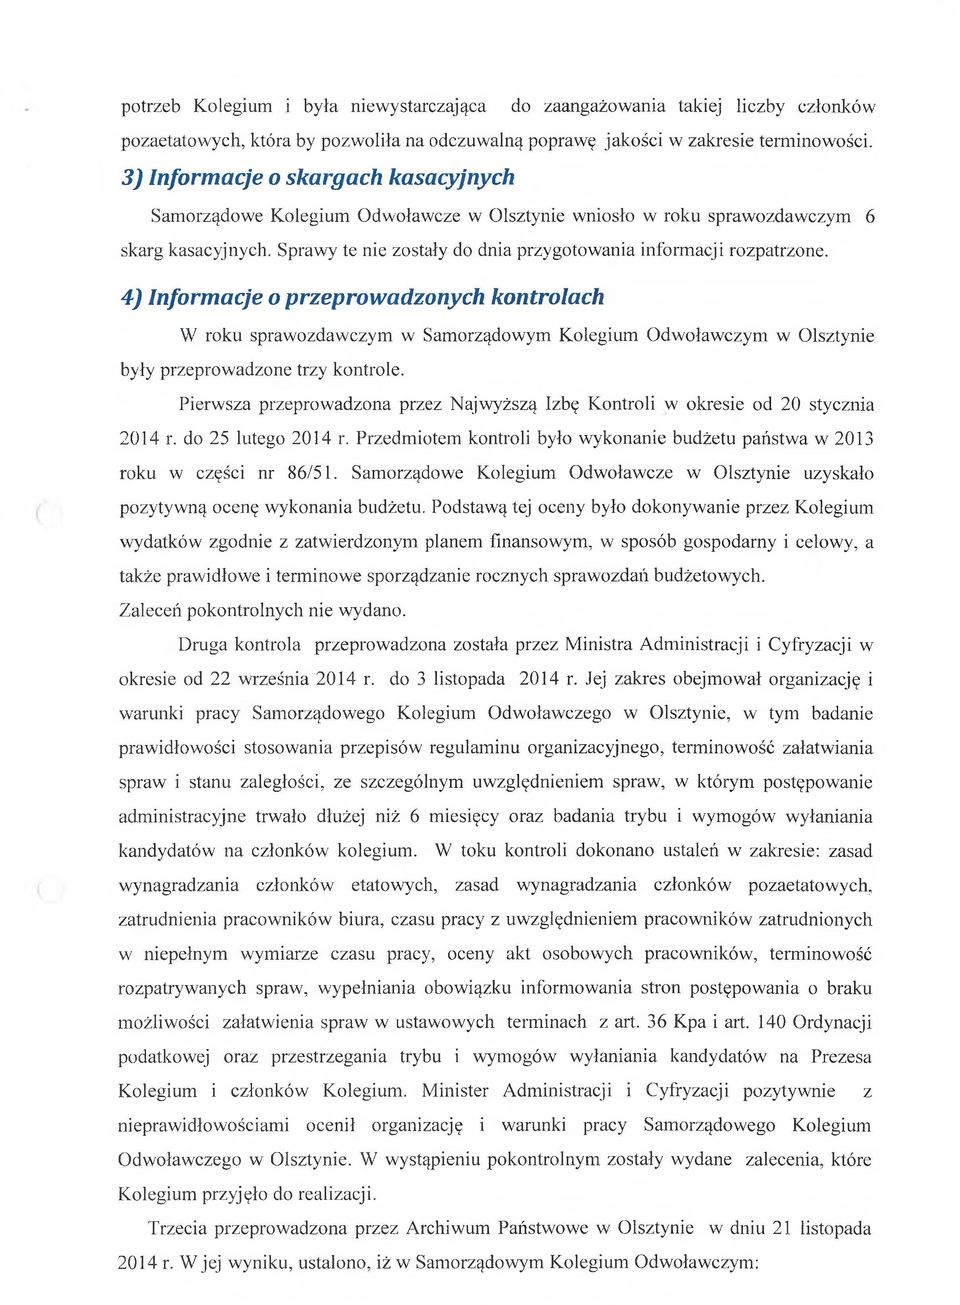 4) Informacje o przeprowadzonych kontrolach W roku sprawozdawczym w Samorządowym Kolegium Odwoławczym w Olsztynie były przeprowadzone trzy kontrole.